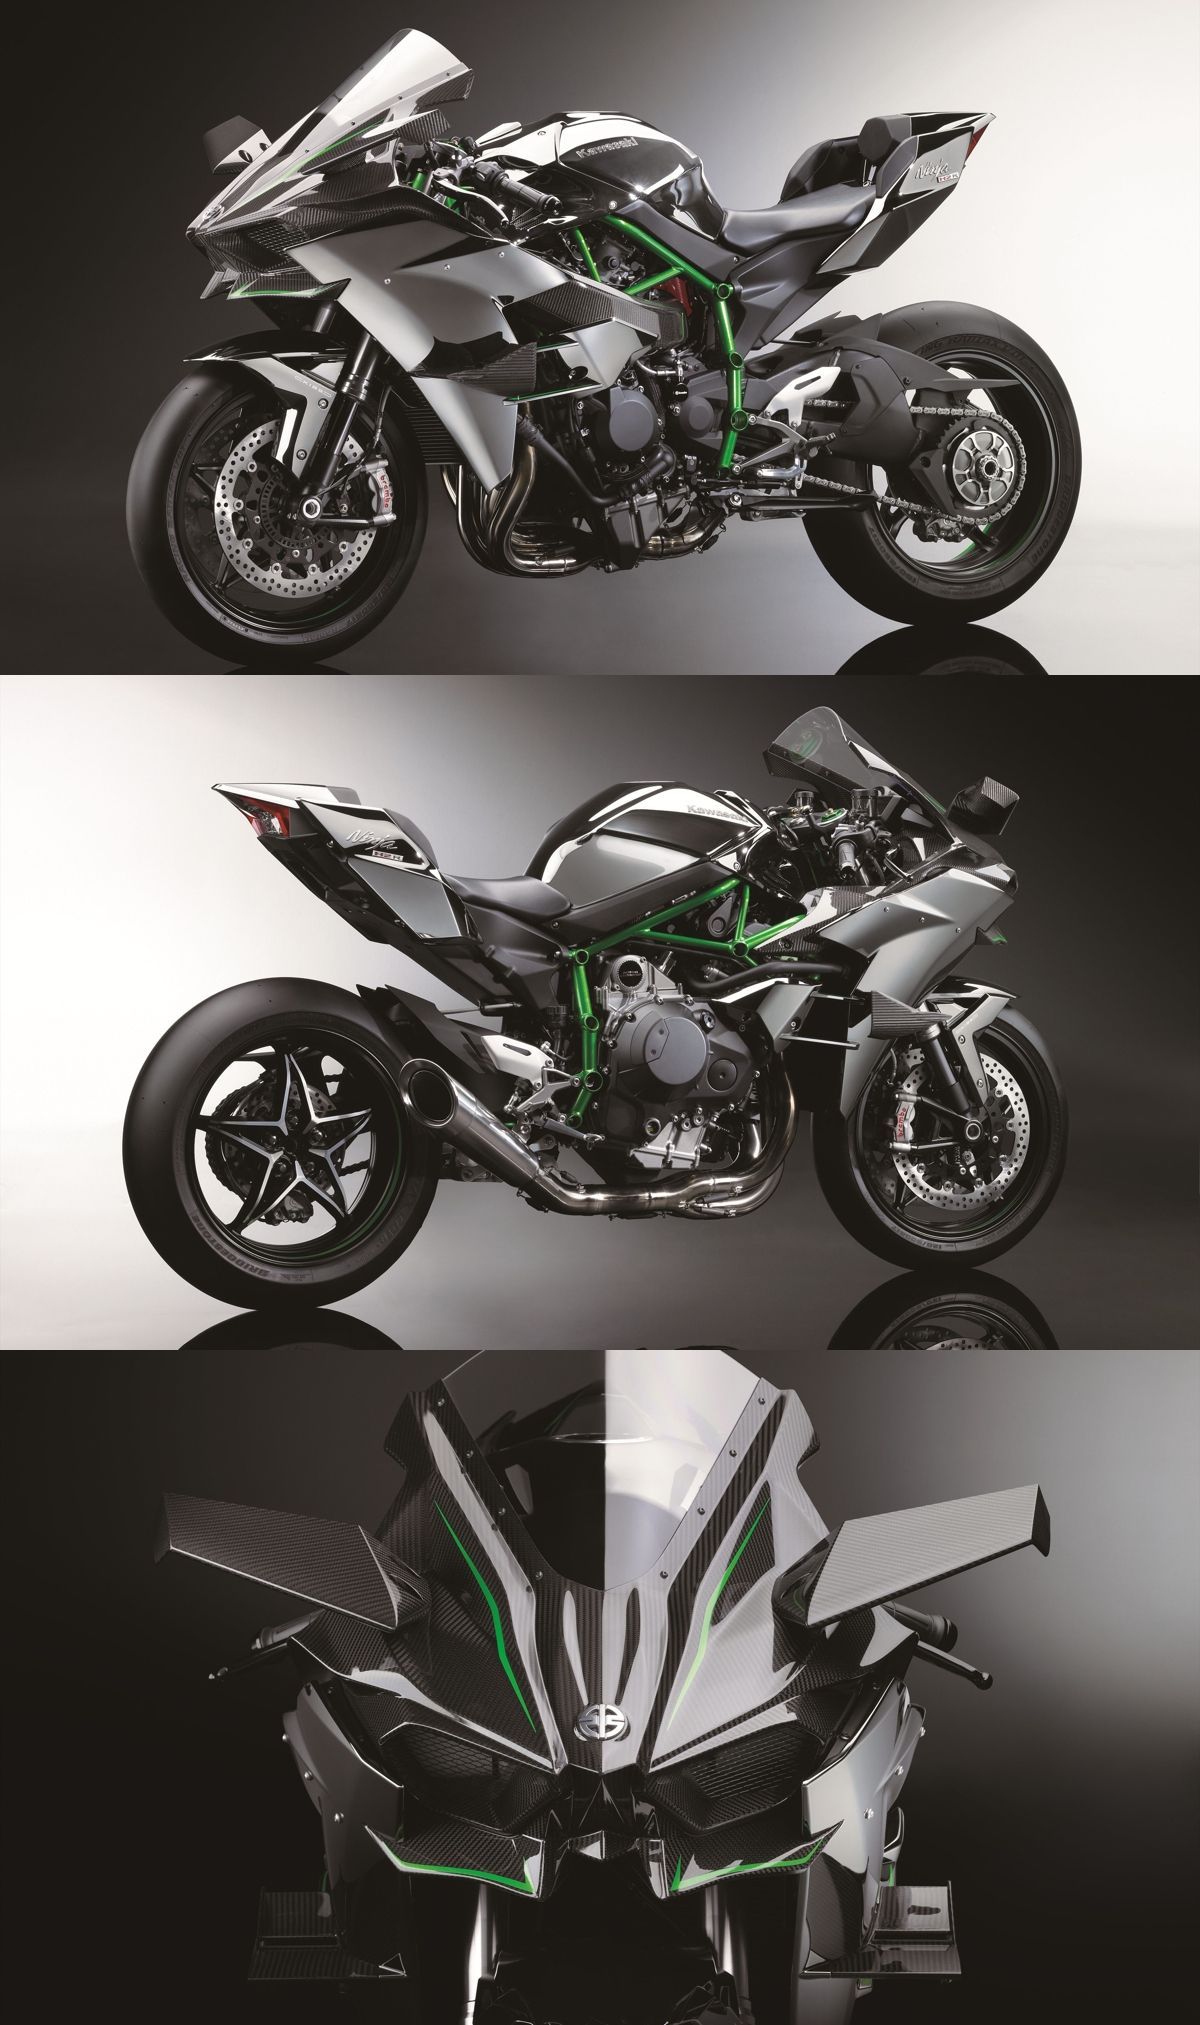 Kawasaki Ninja H2R – With 3